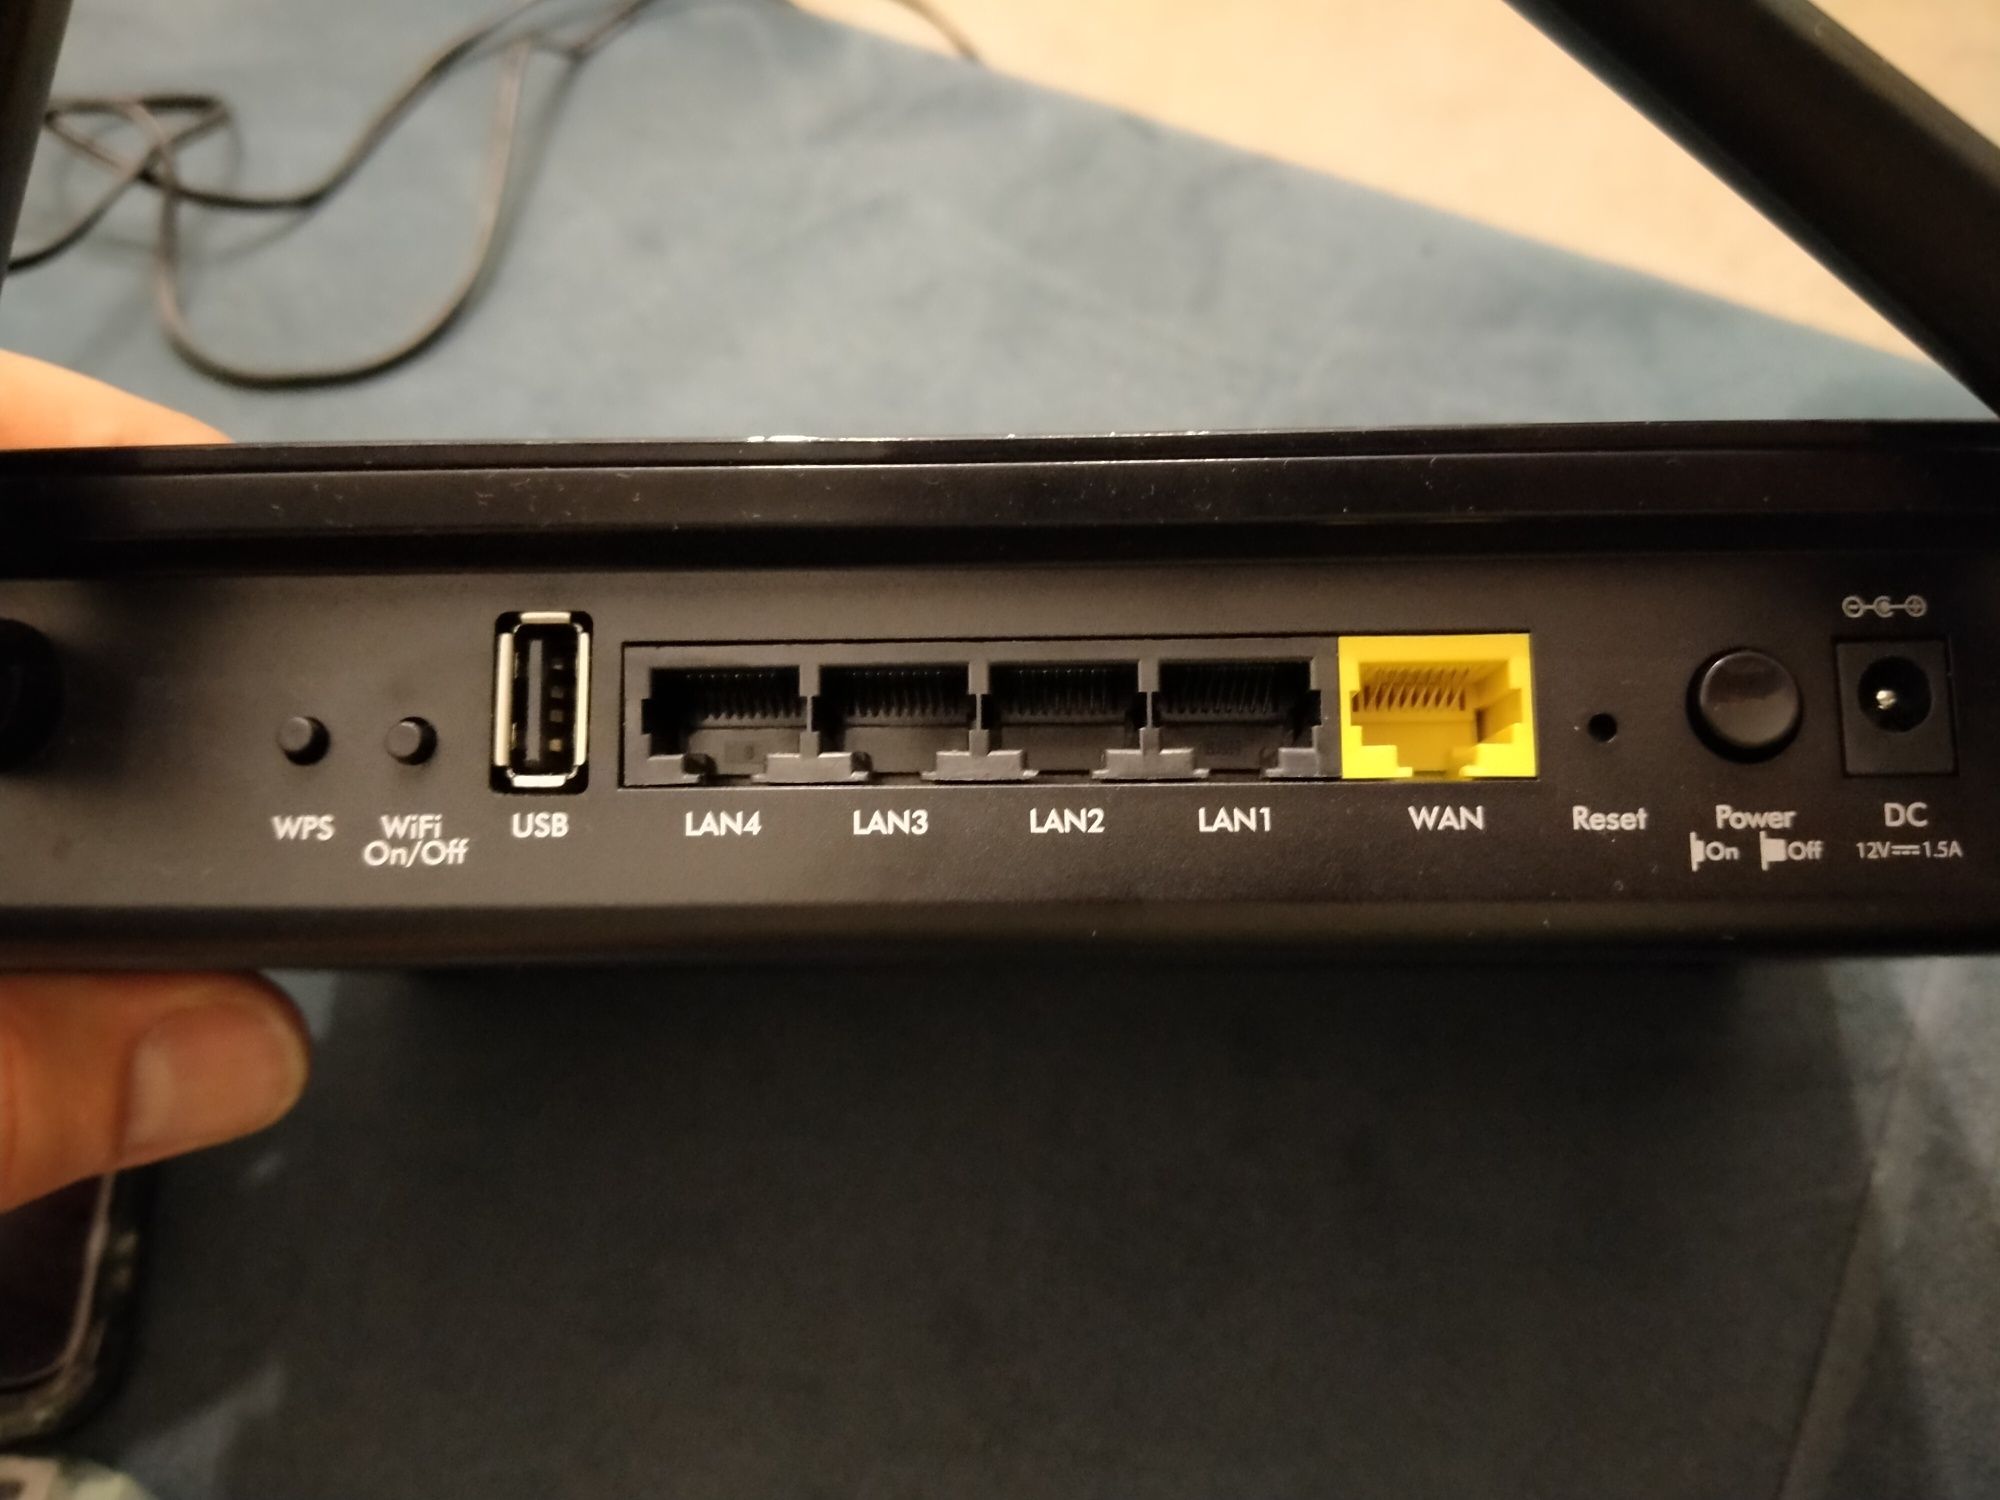 Router wifi NETGEAR - AC1200 model R6220